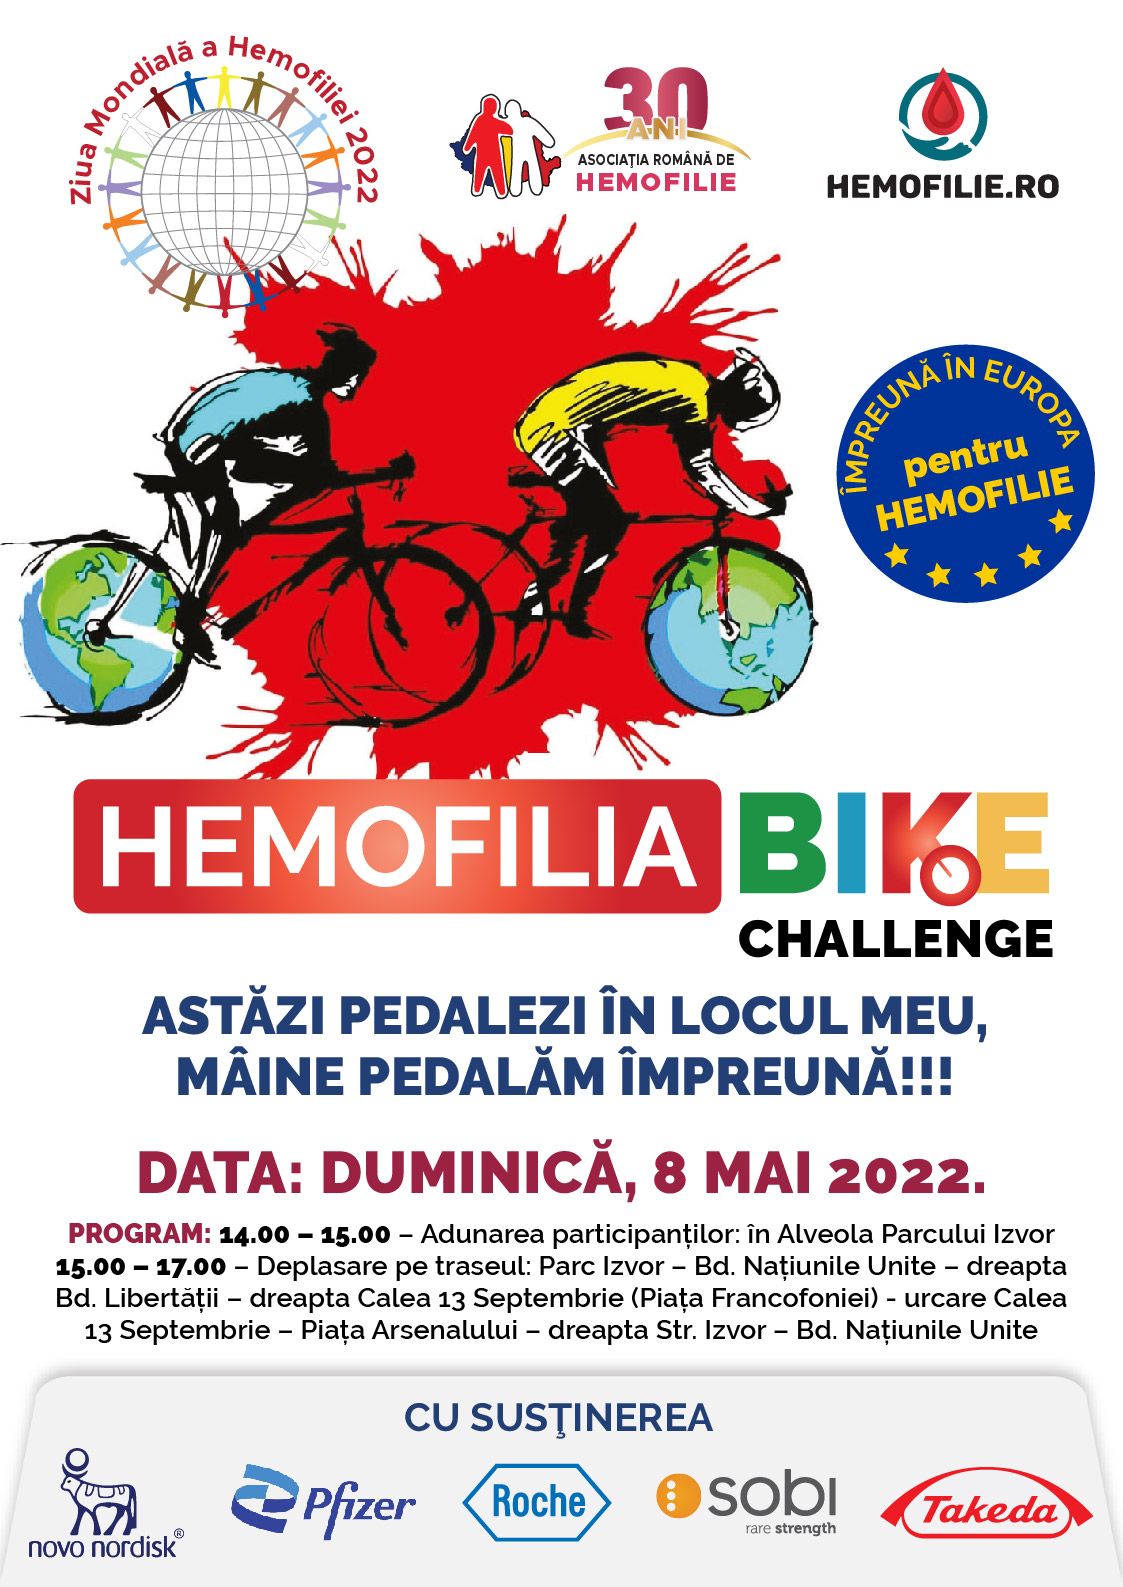 Hemofilia Bike Challenge: Să pedalăm împreună pentru bolnavii de hemofilie